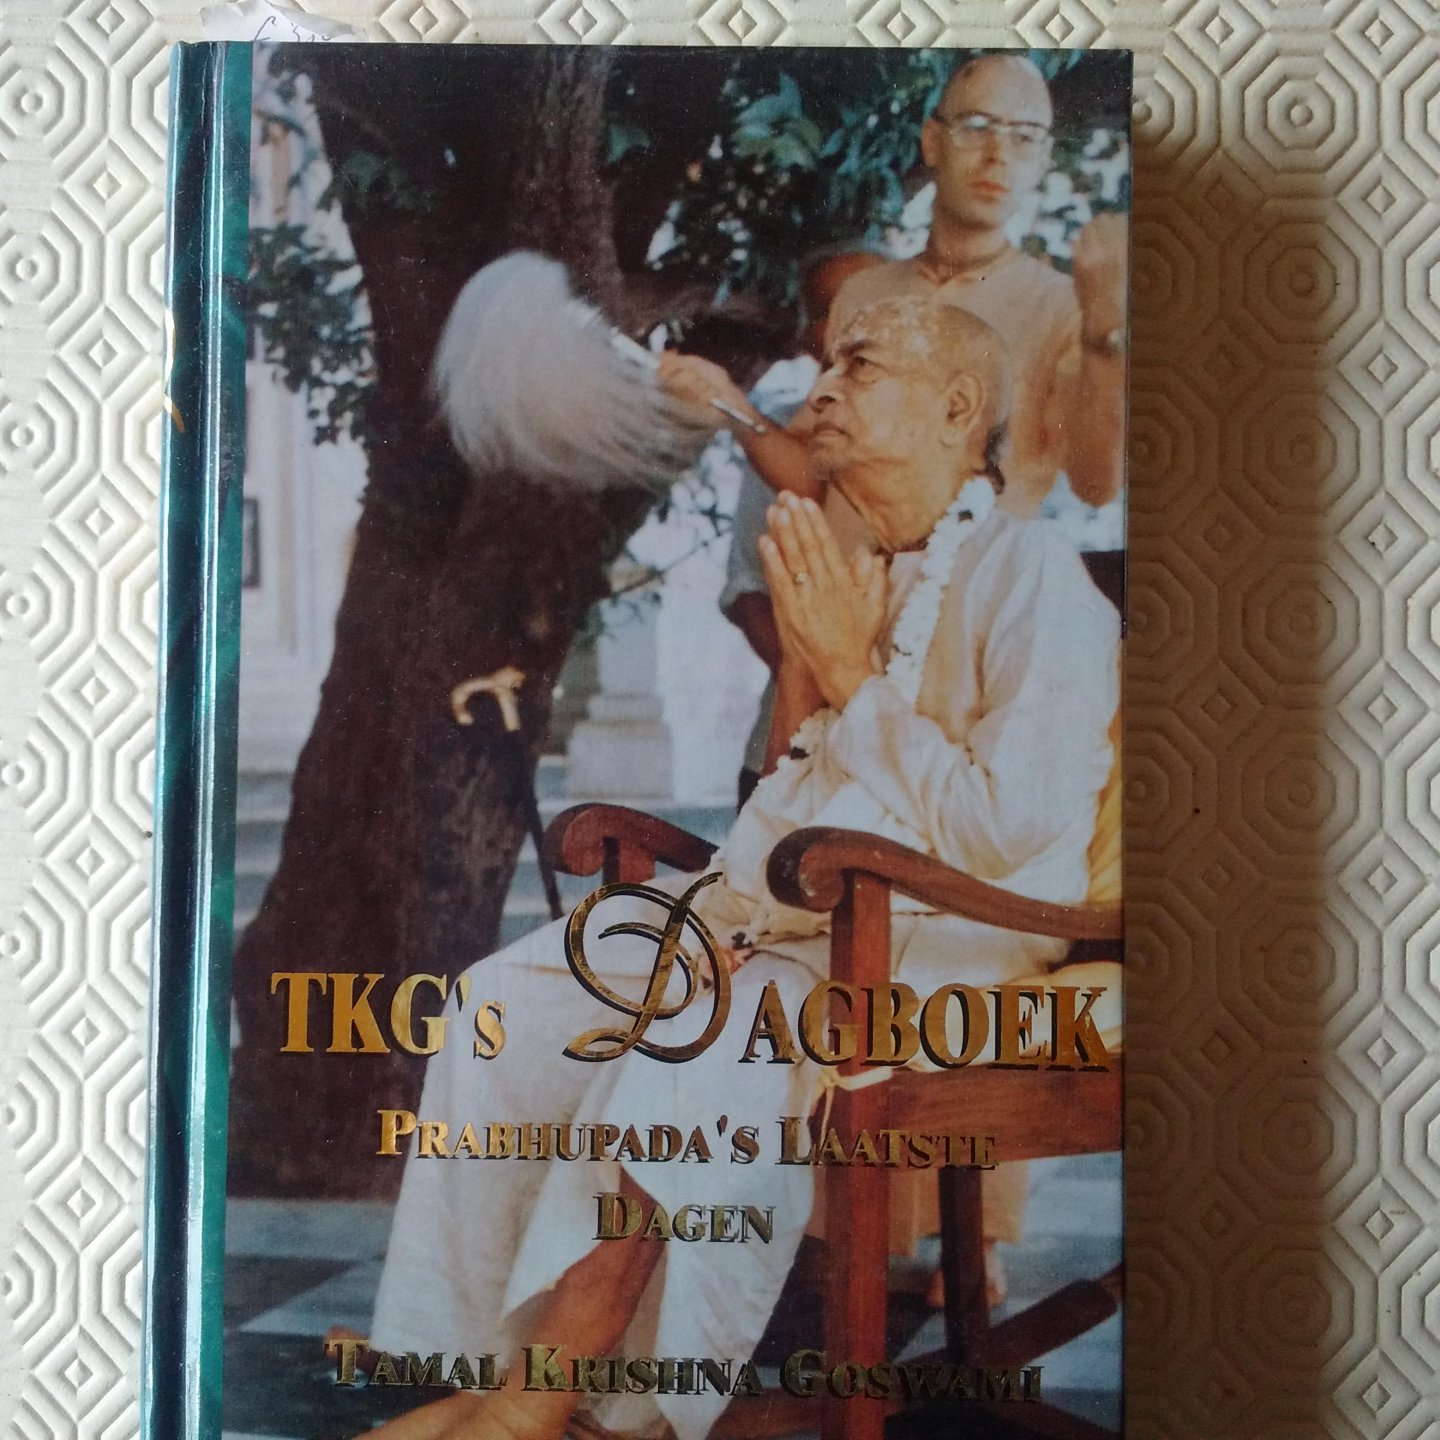 Goswami, Tamal Krishna - TKG's dagboek. Prabhupada's laatste dagen